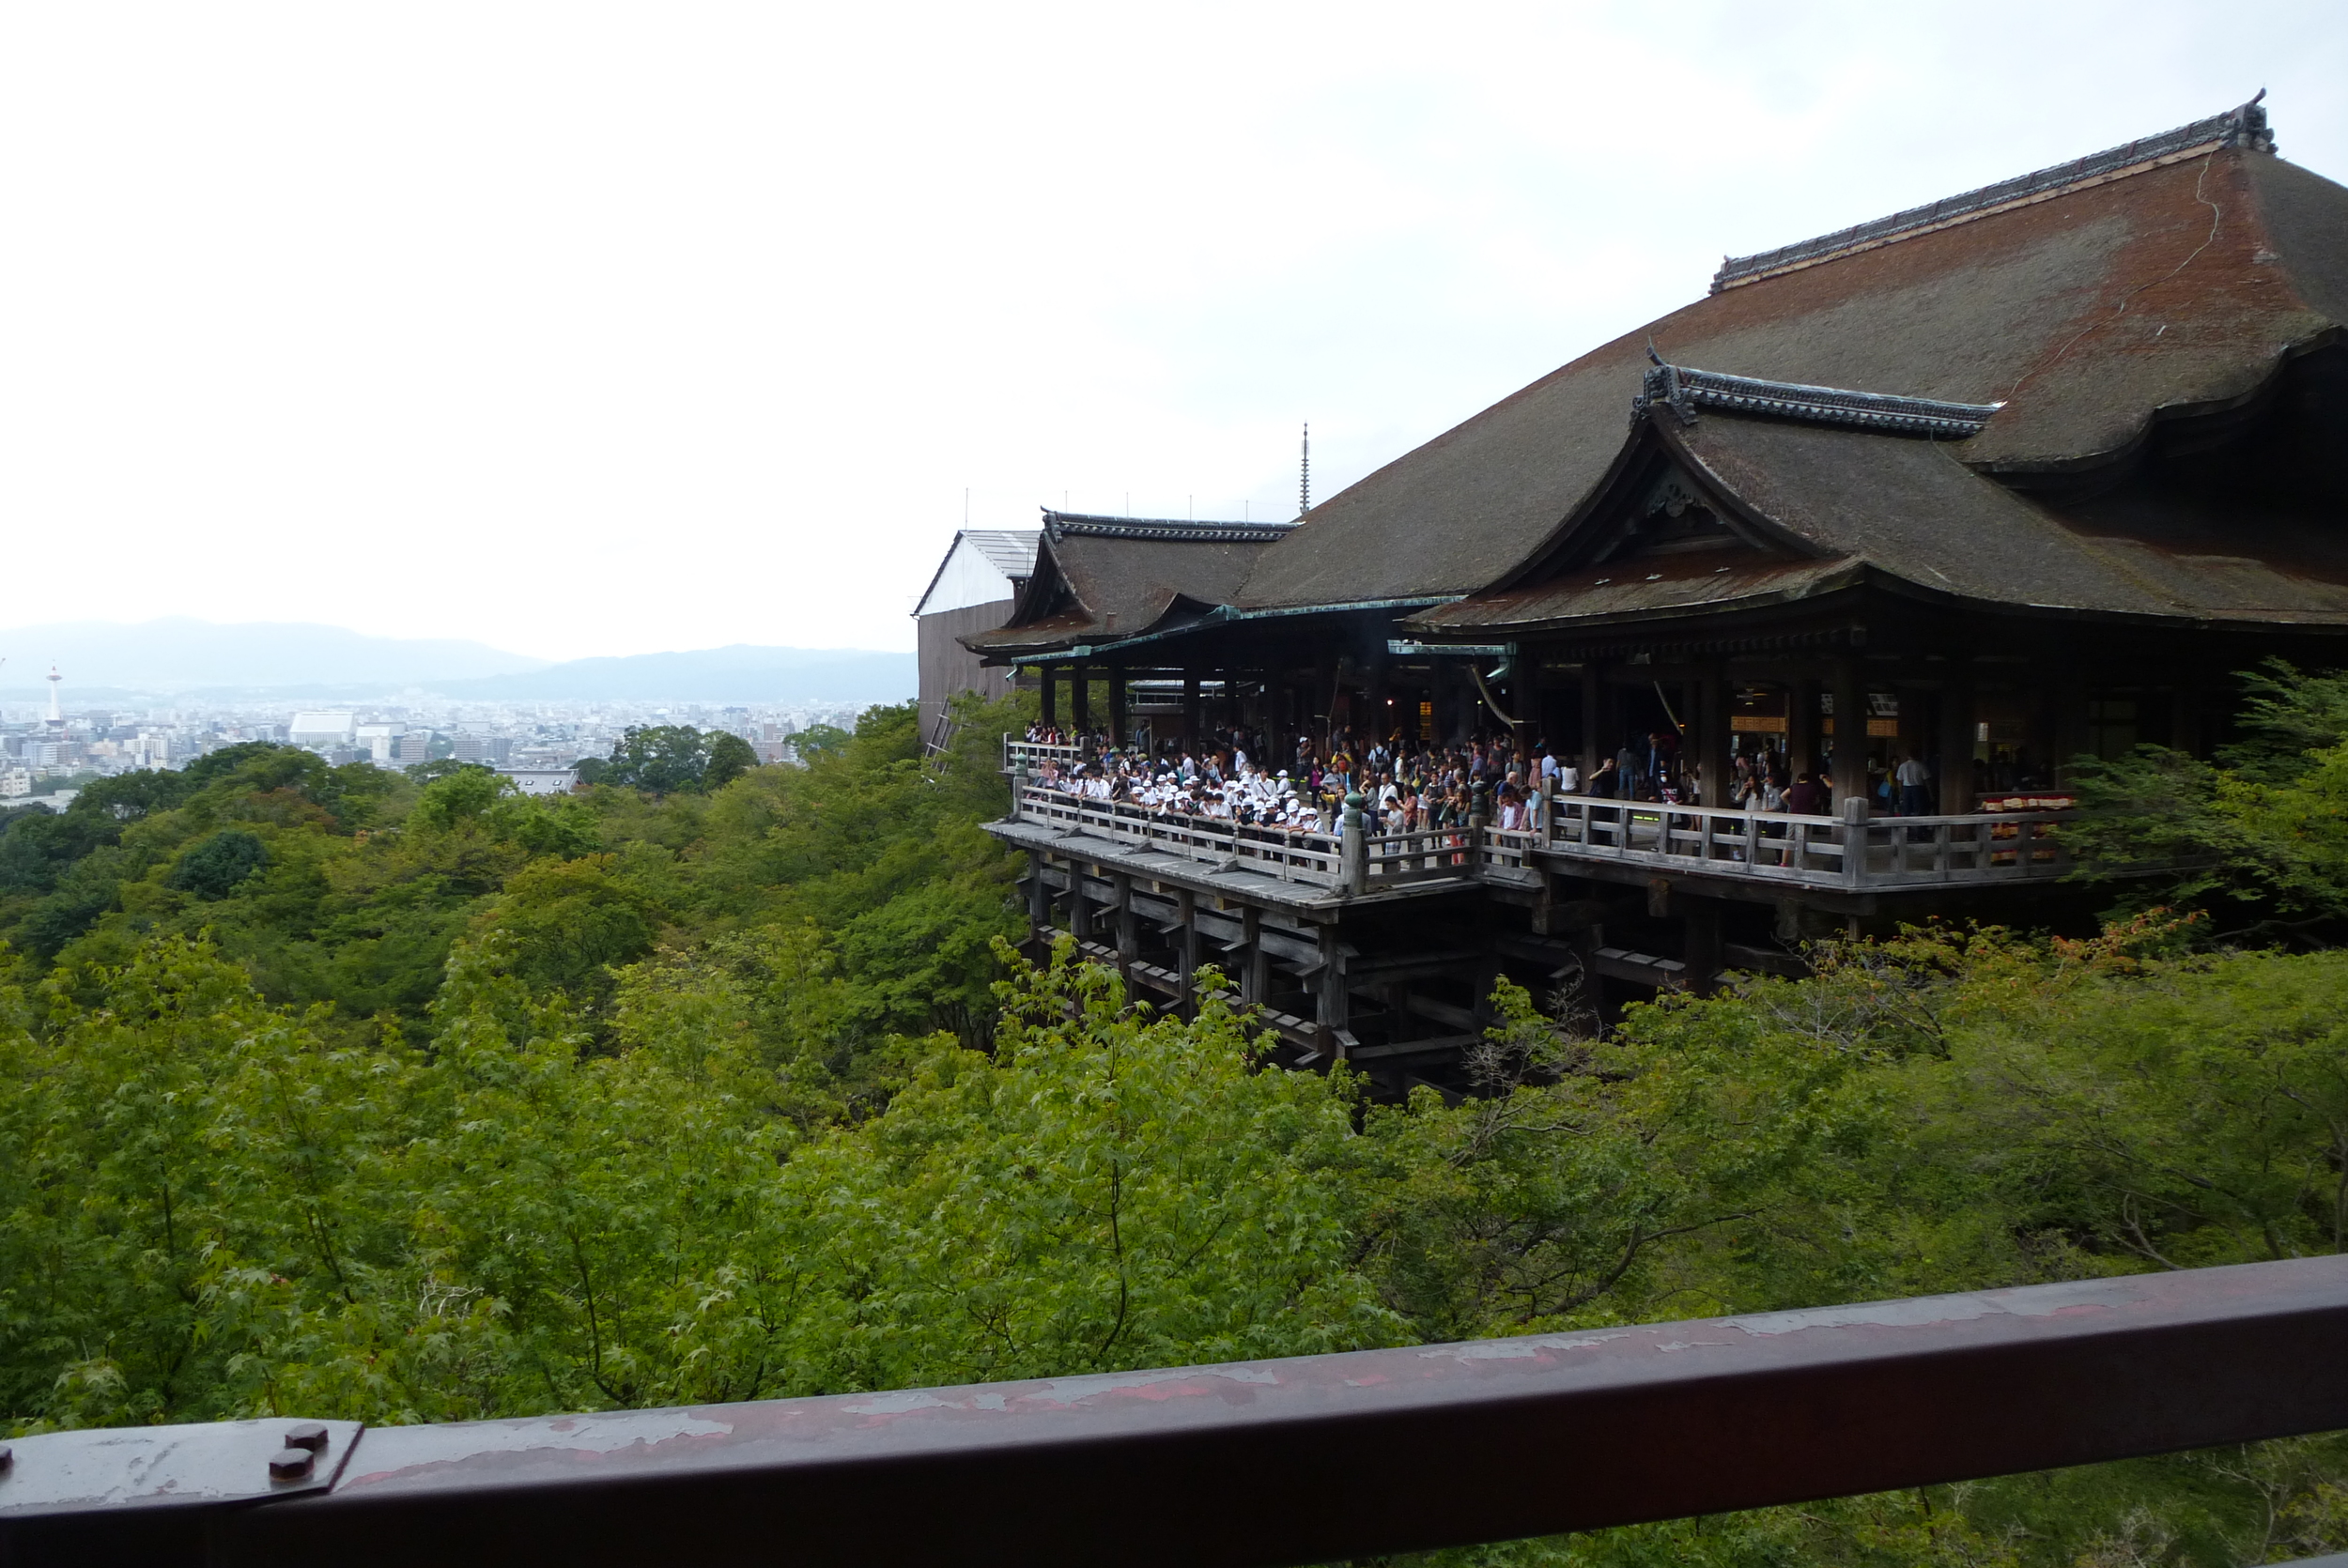 Overlooking Kyoto at Kiyomizudera Temple